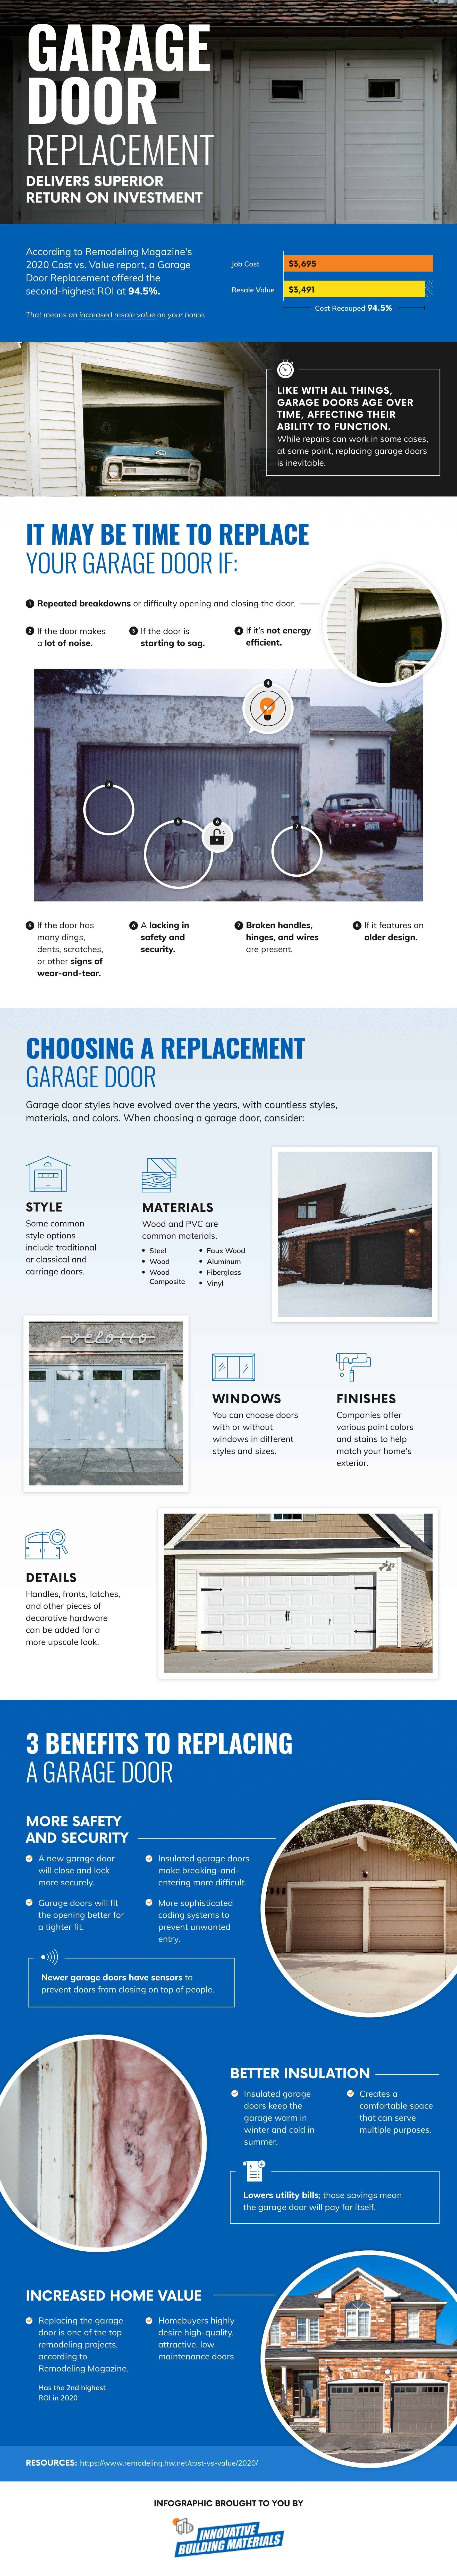 Garage door replacement benefits